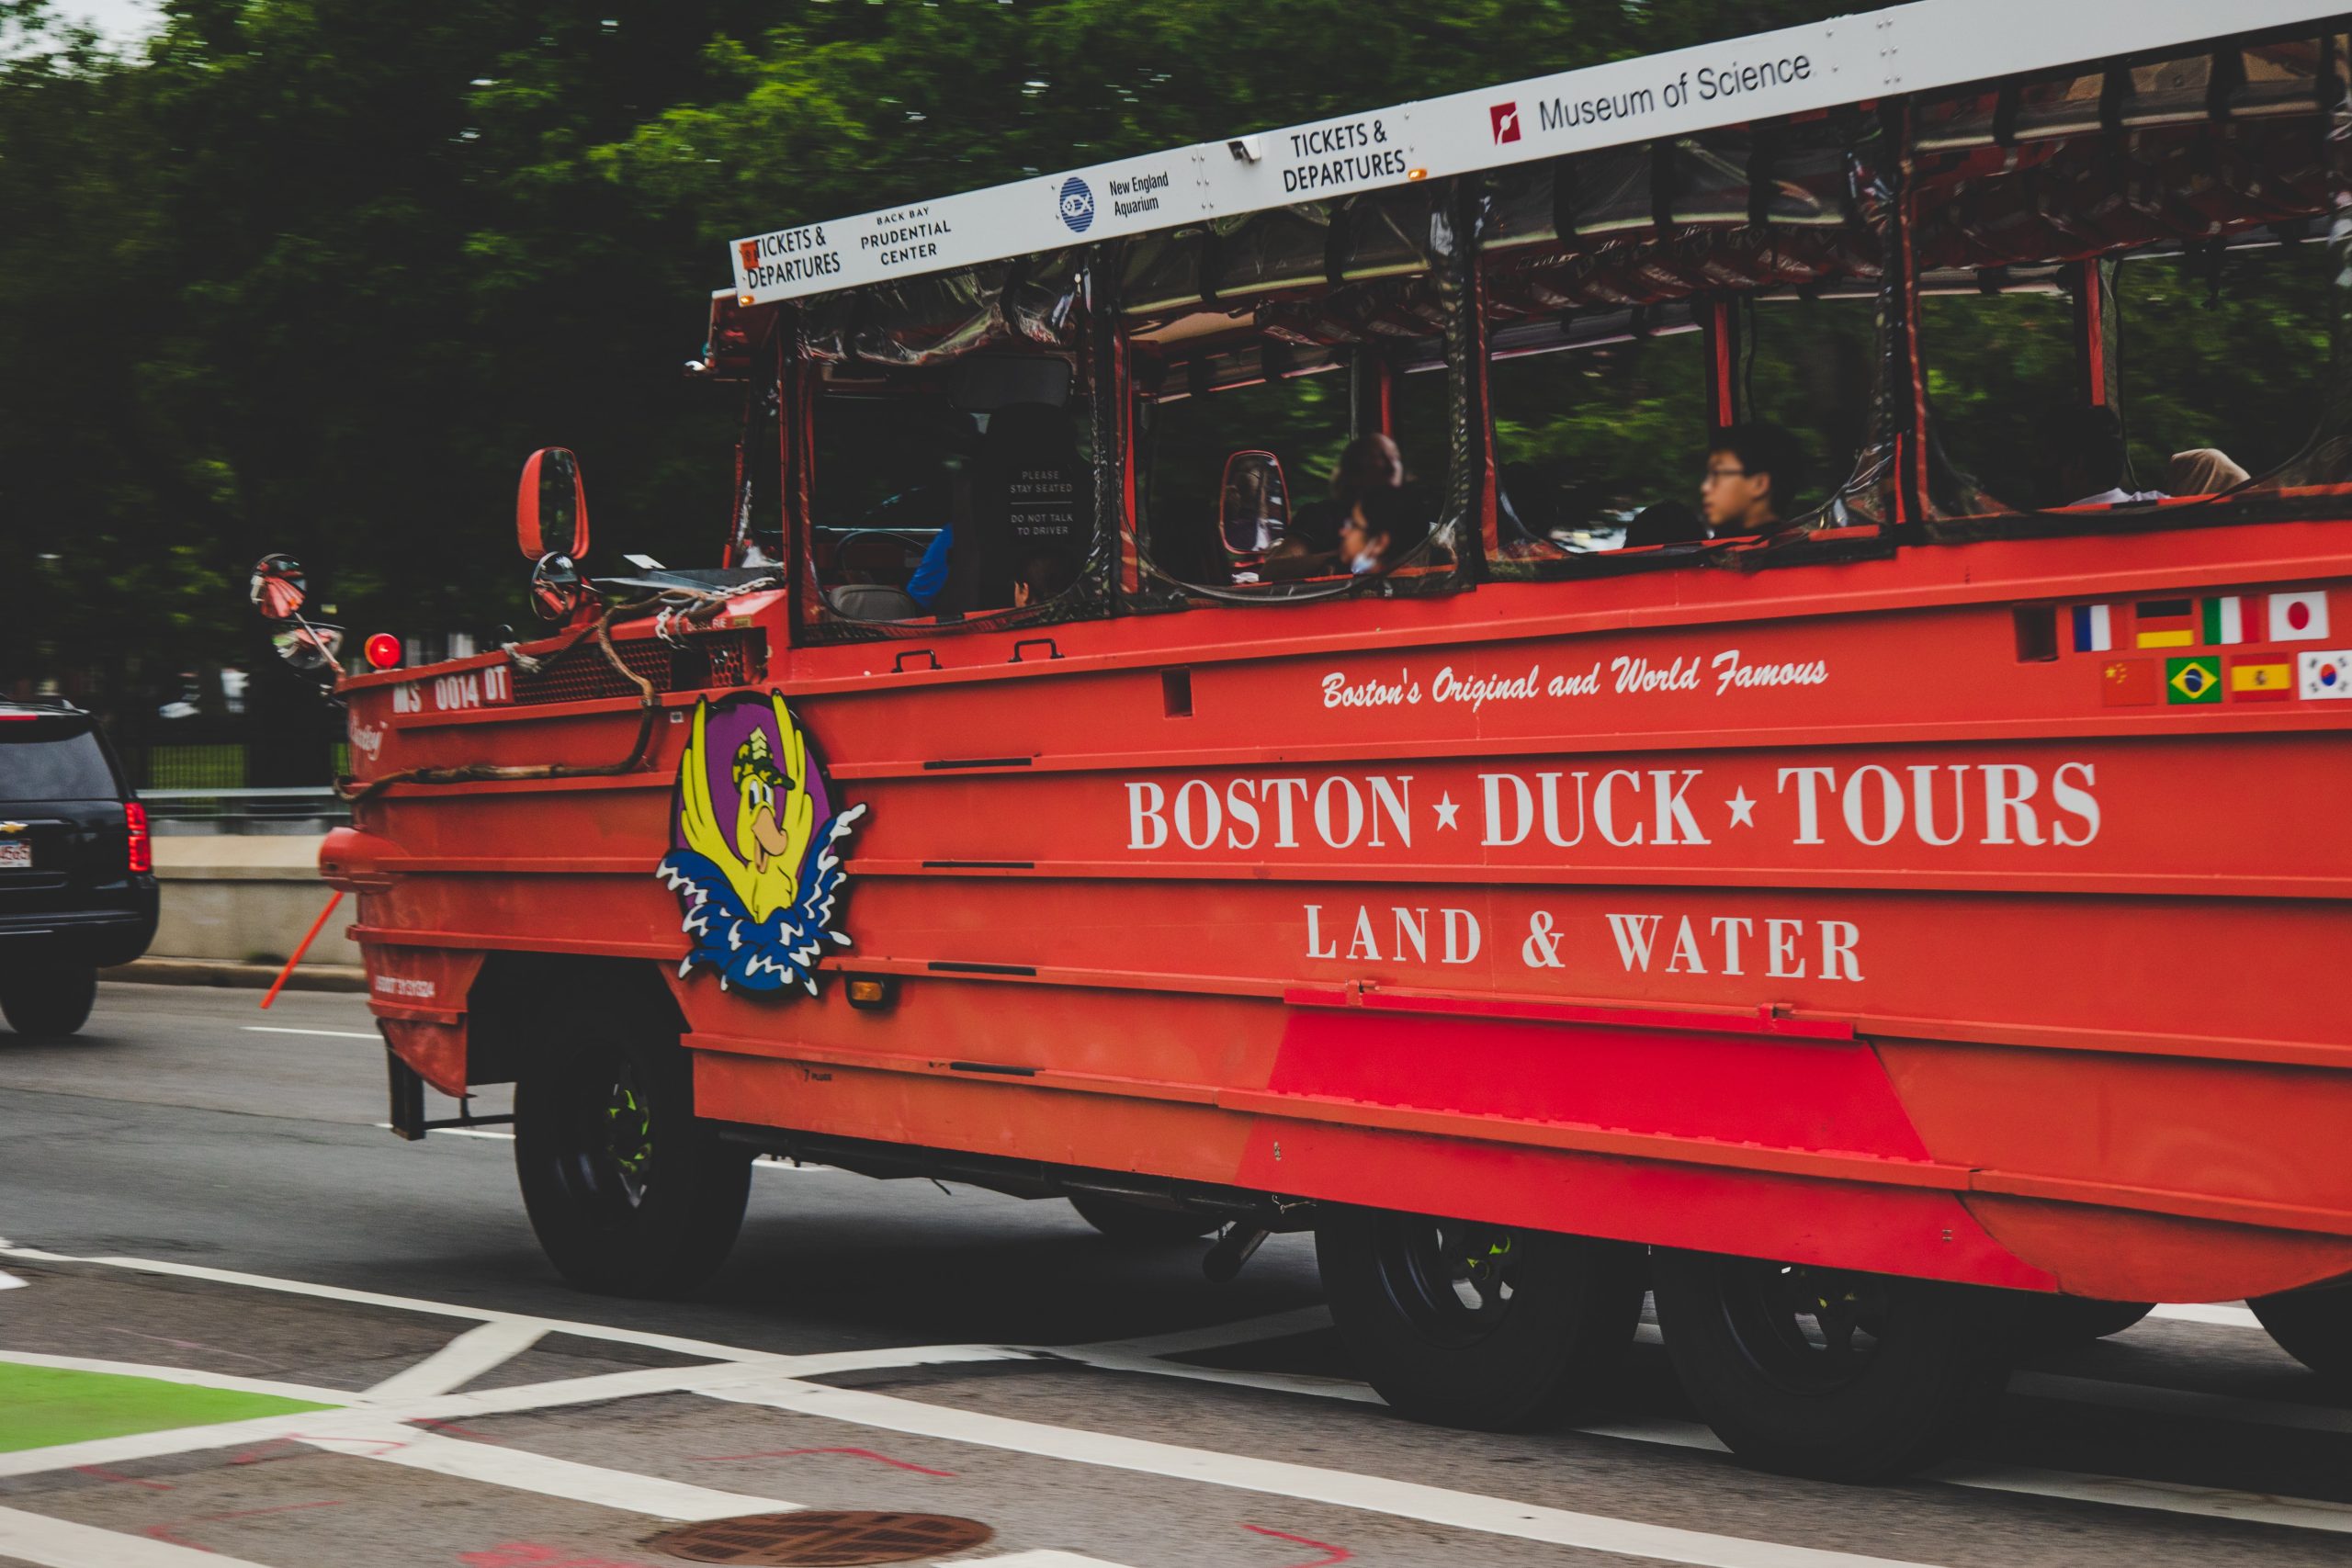 Explorando Boston a lo Grande: Un Paseo en el Boston Duck